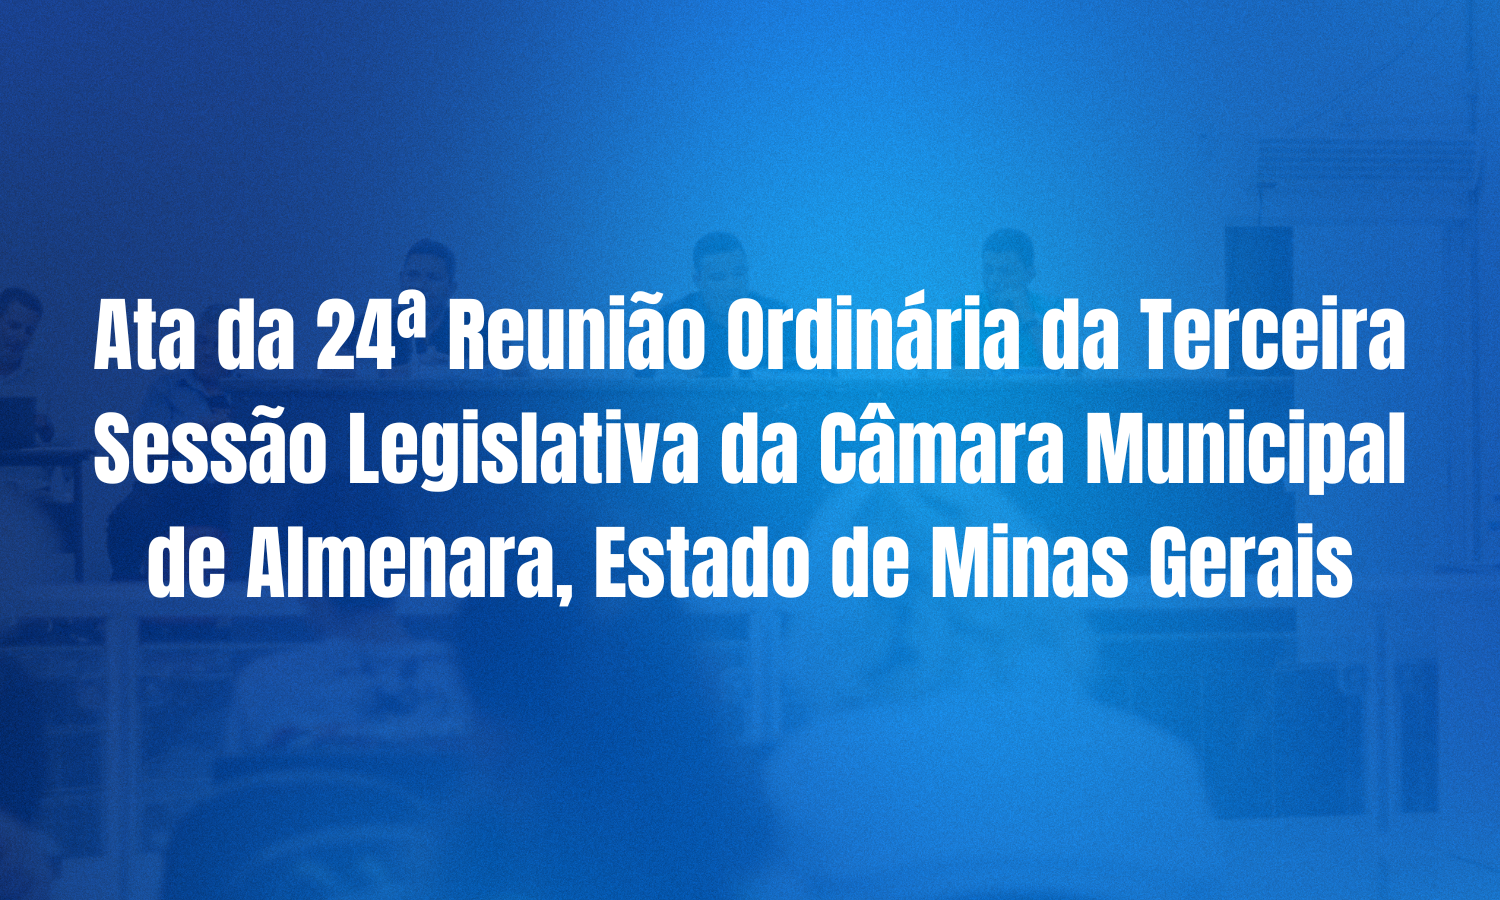 Ata da 24ª Reunião Ordinária da Terceira Sessão Legislativa da Câmara Municipal de Almenara, Estado de Minas Gerais